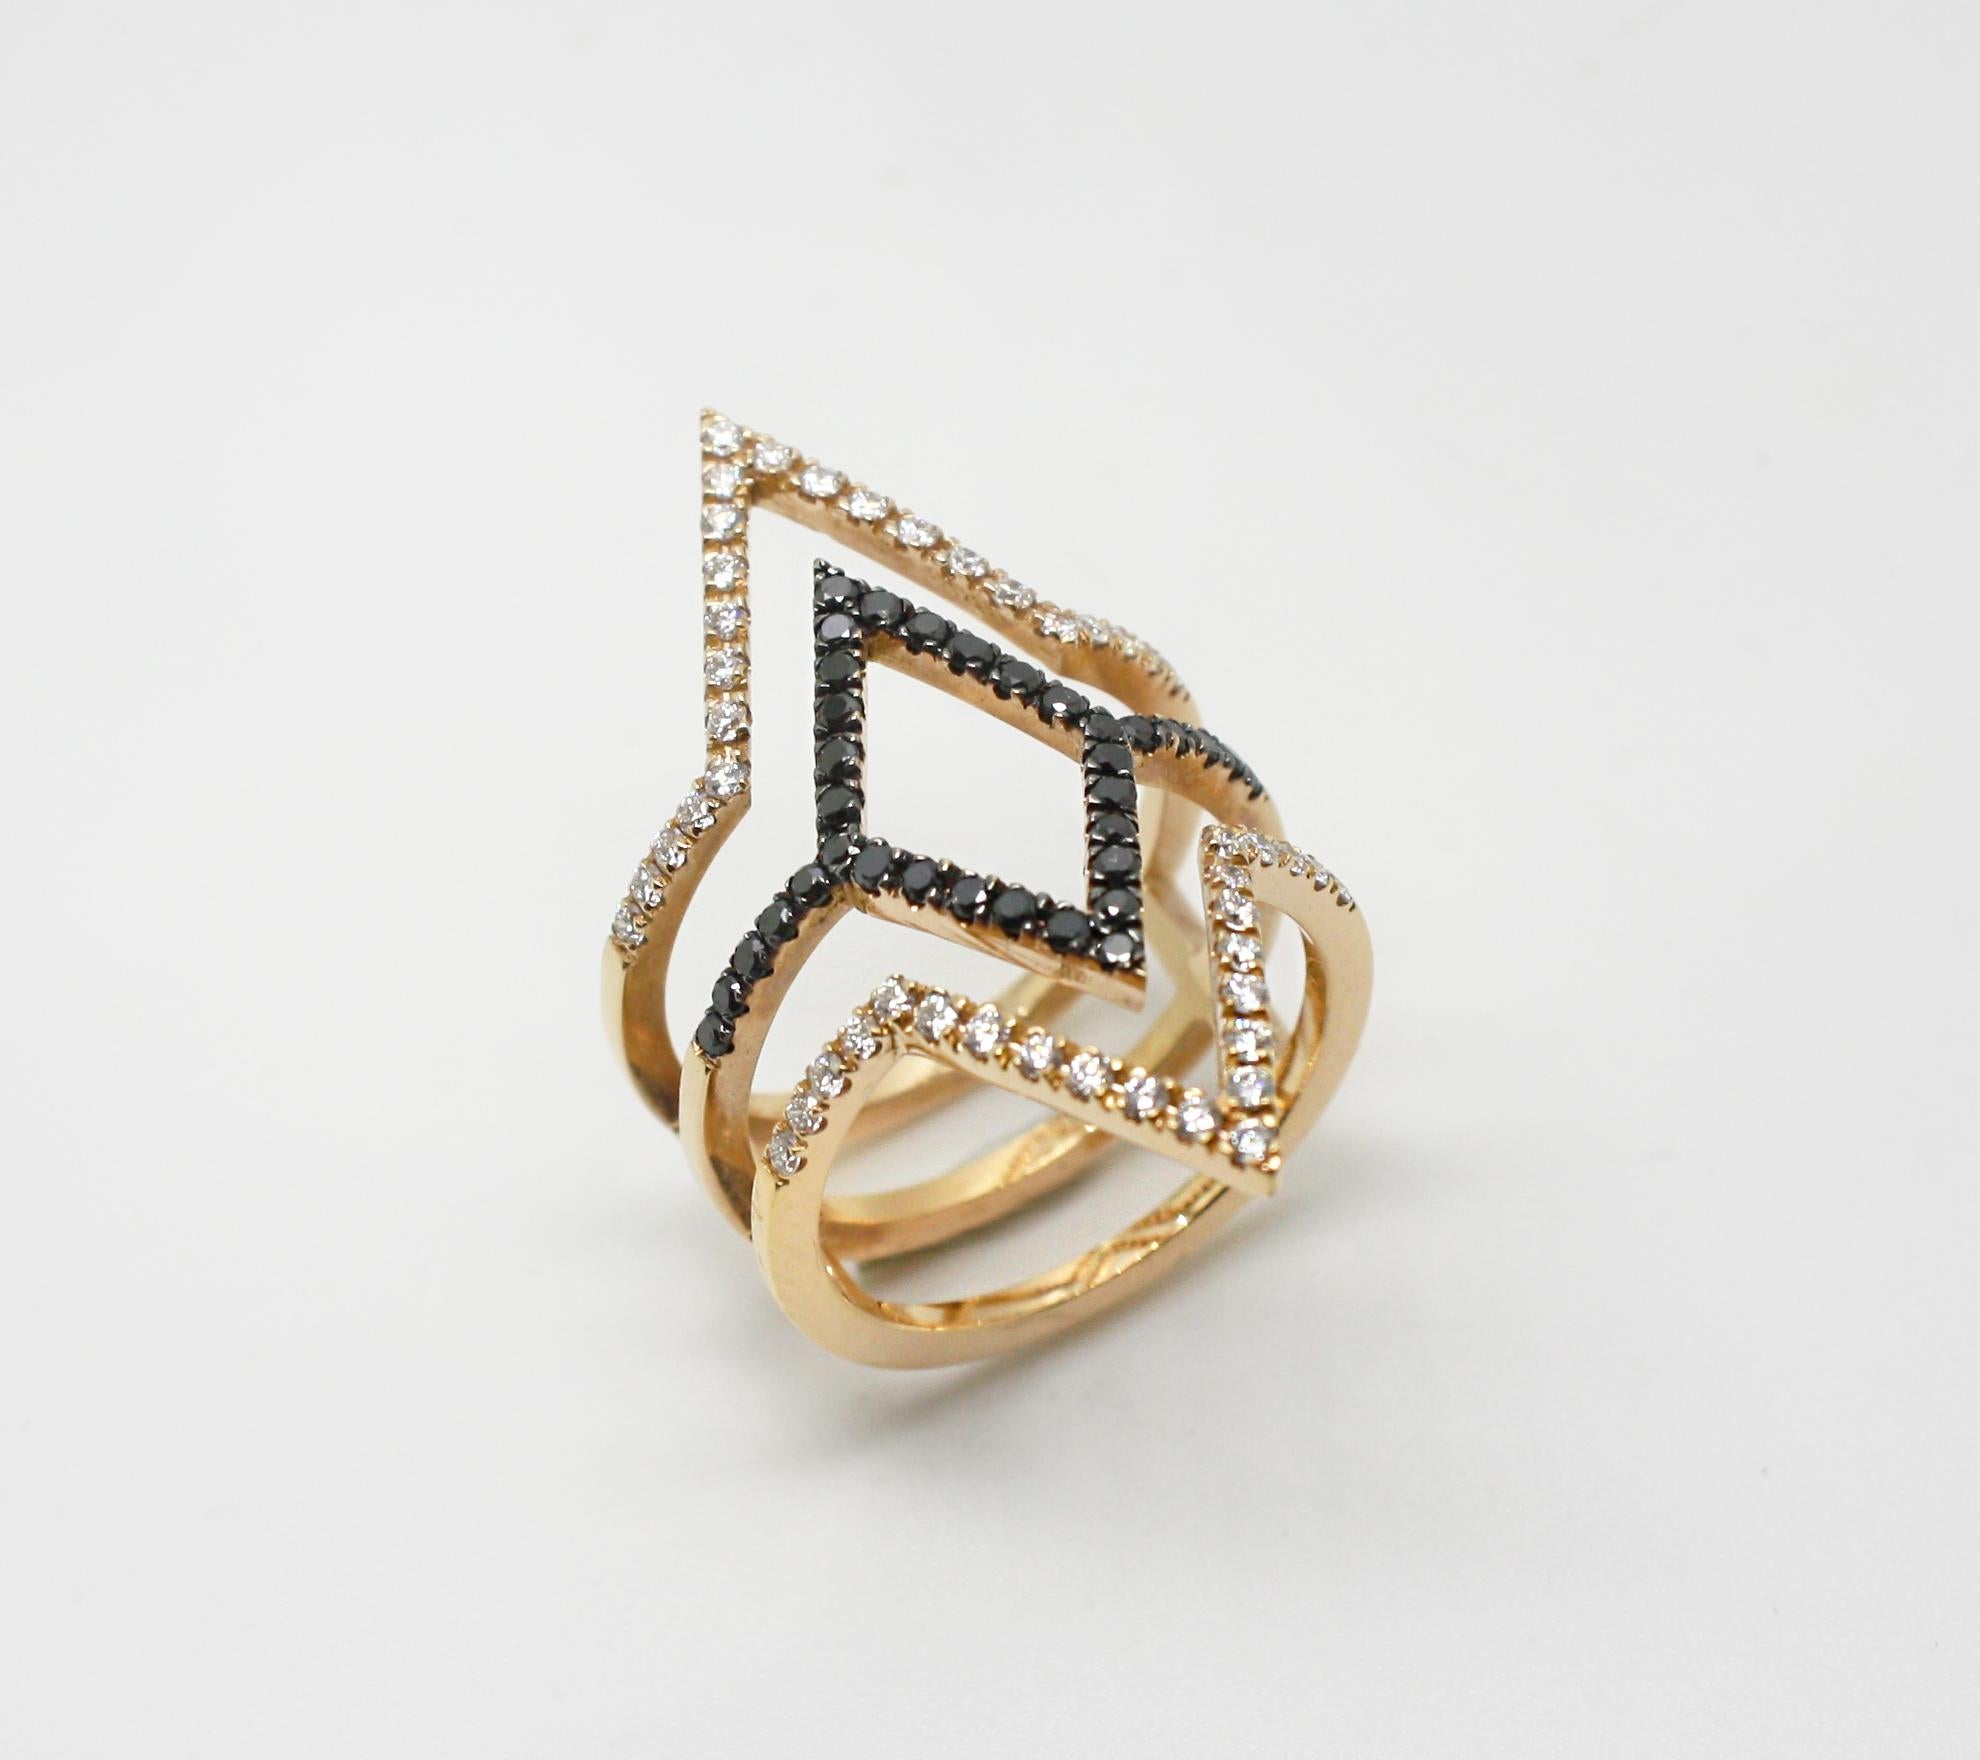 La bague à diamants noirs et blancs en or rose 18 carats de S.Georgios est fabriquée à la main selon un design unique en forme de spirale. Les diamants noirs sont sertis dans des griffes en rhodium noir, ce qui leur donne un aspect éblouissant.